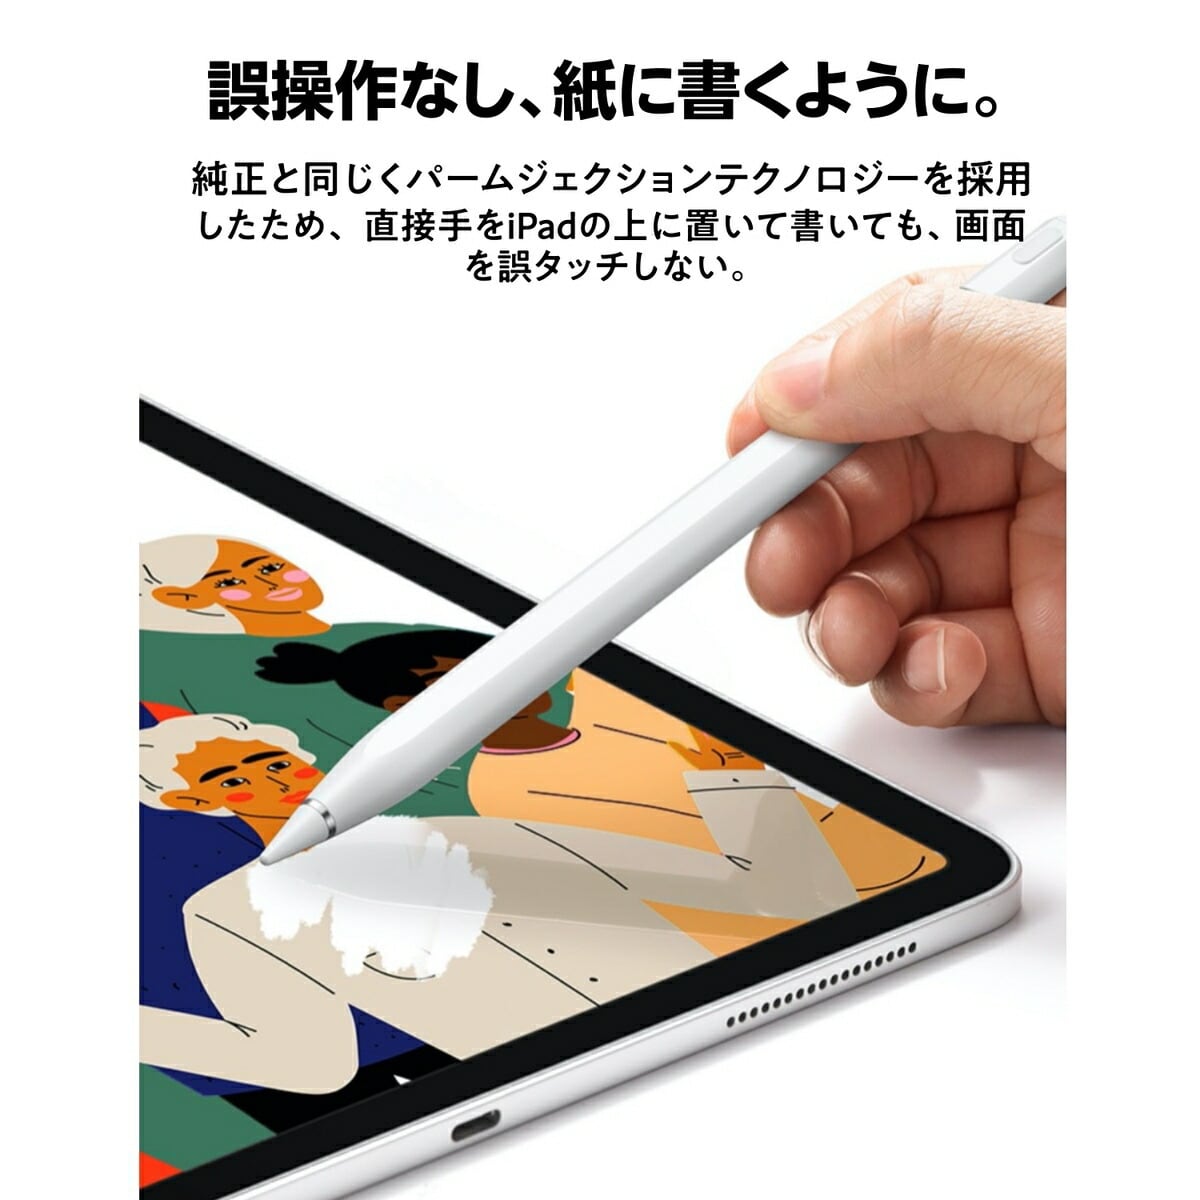 iPad ペンシル タッチペン ホワイト 第10世代対応 スタイラスペン 極細